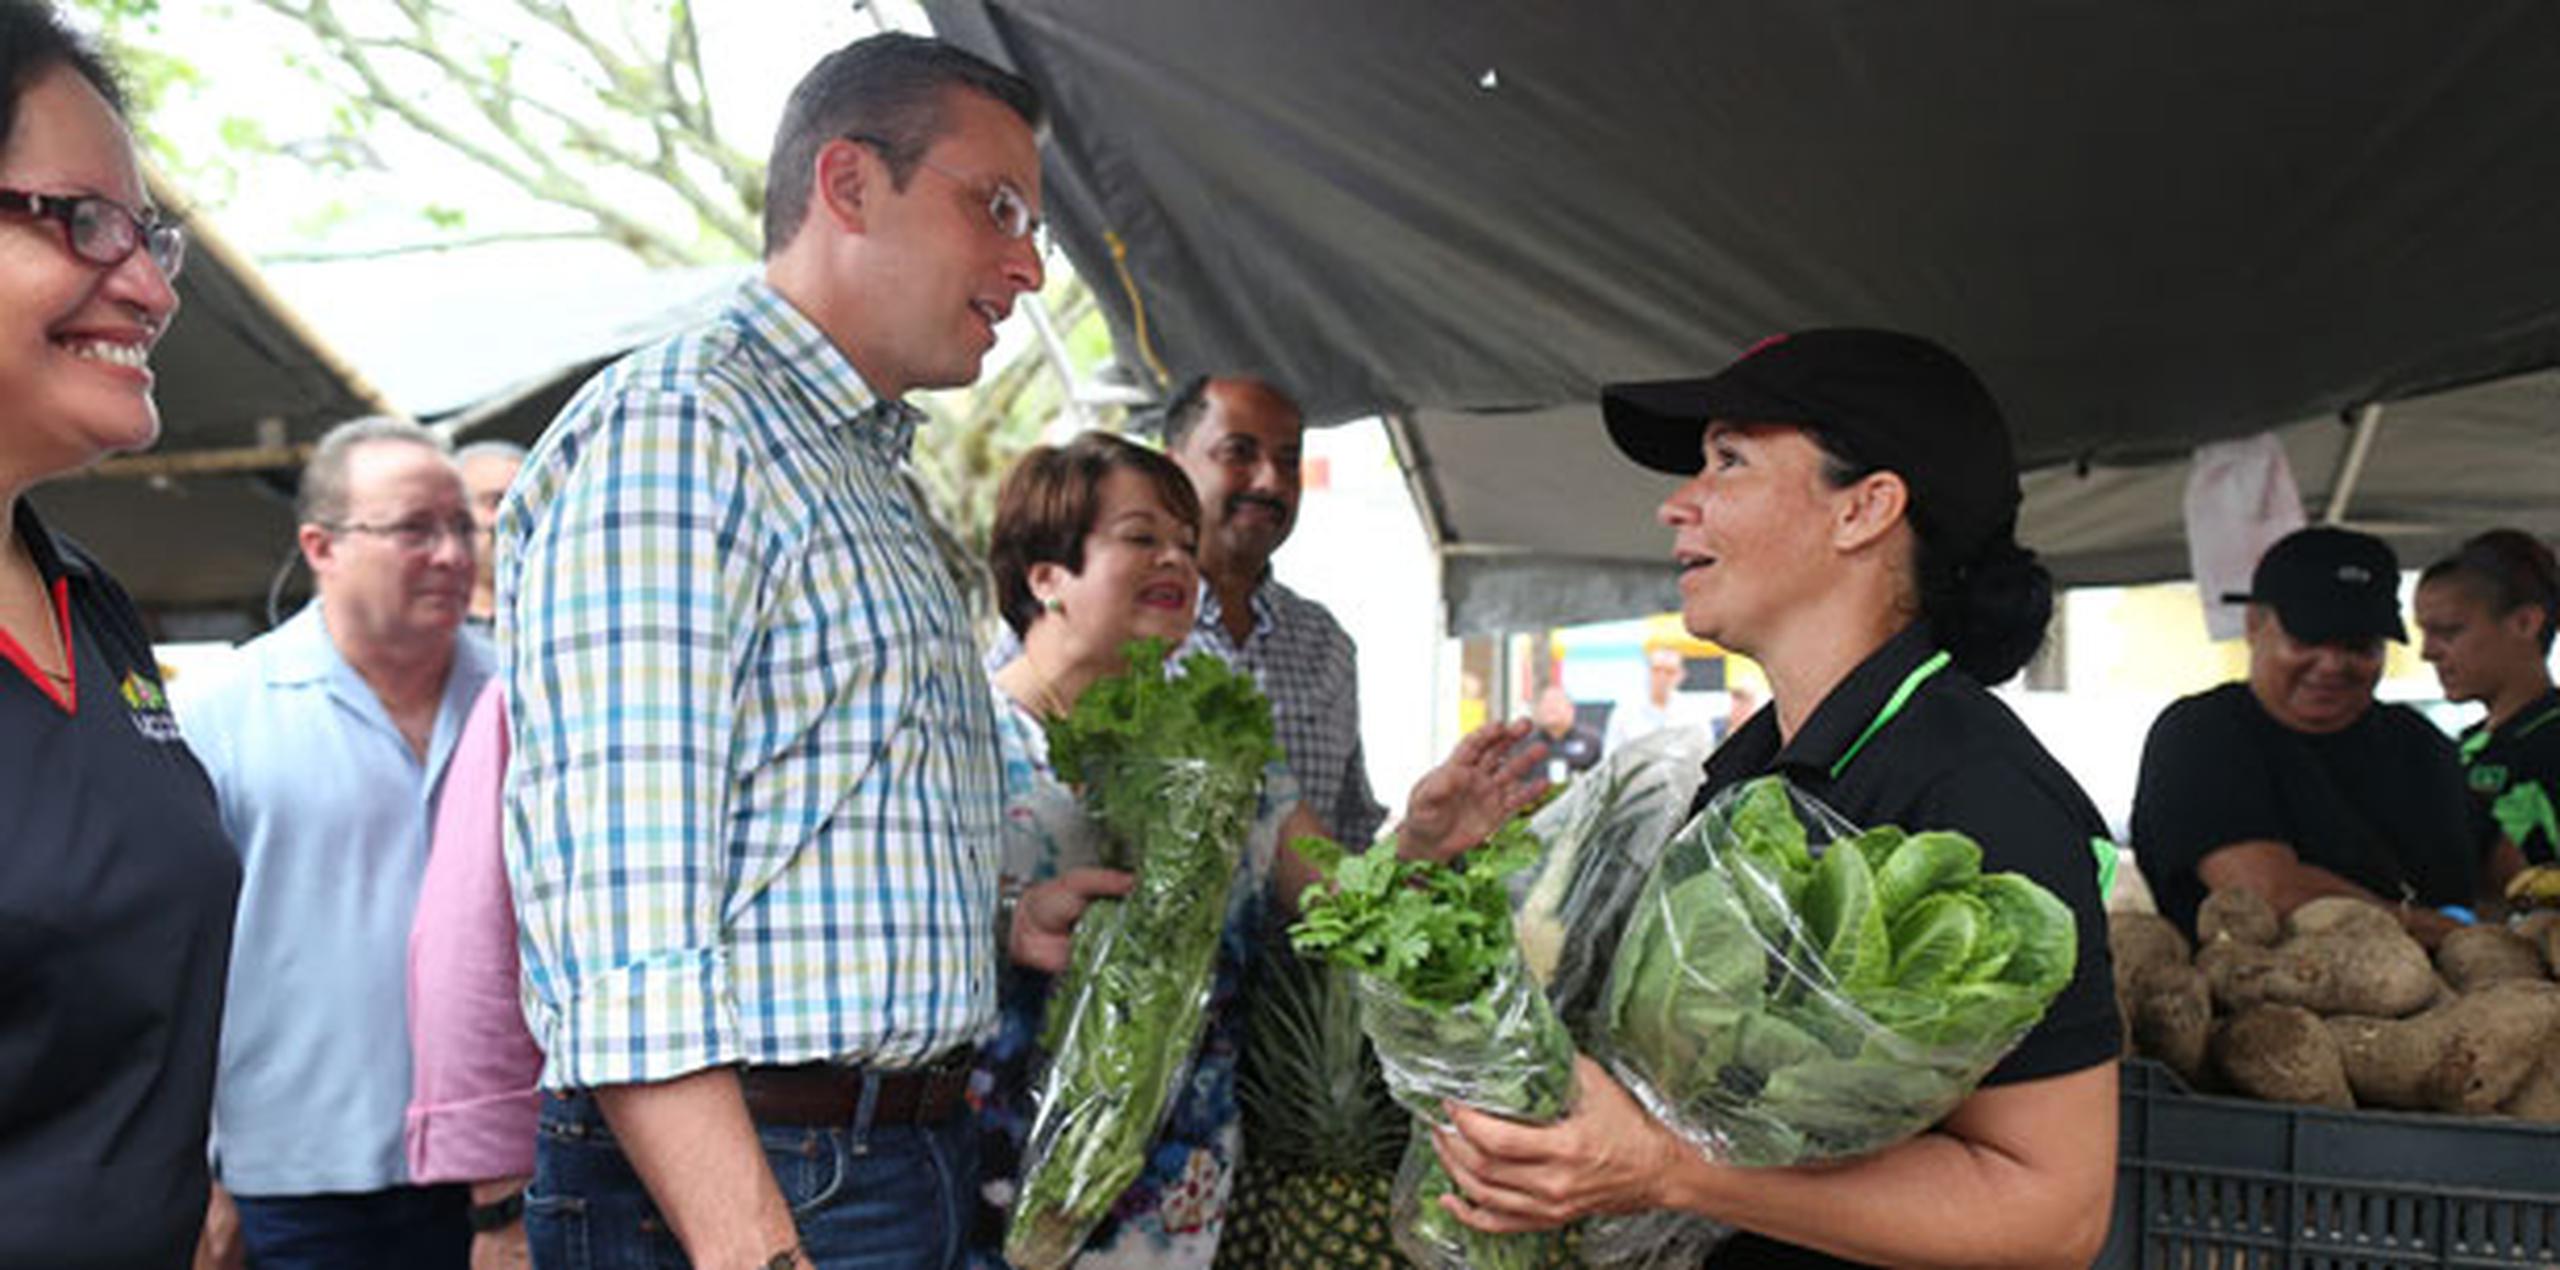 El gobernador Alejandro García Padilla destacó que el proyecto comenzó con 19 agricultores y actualmente cuenta con 124 "que no dan abasto". (vanessa.serra@gfrmedia.com)